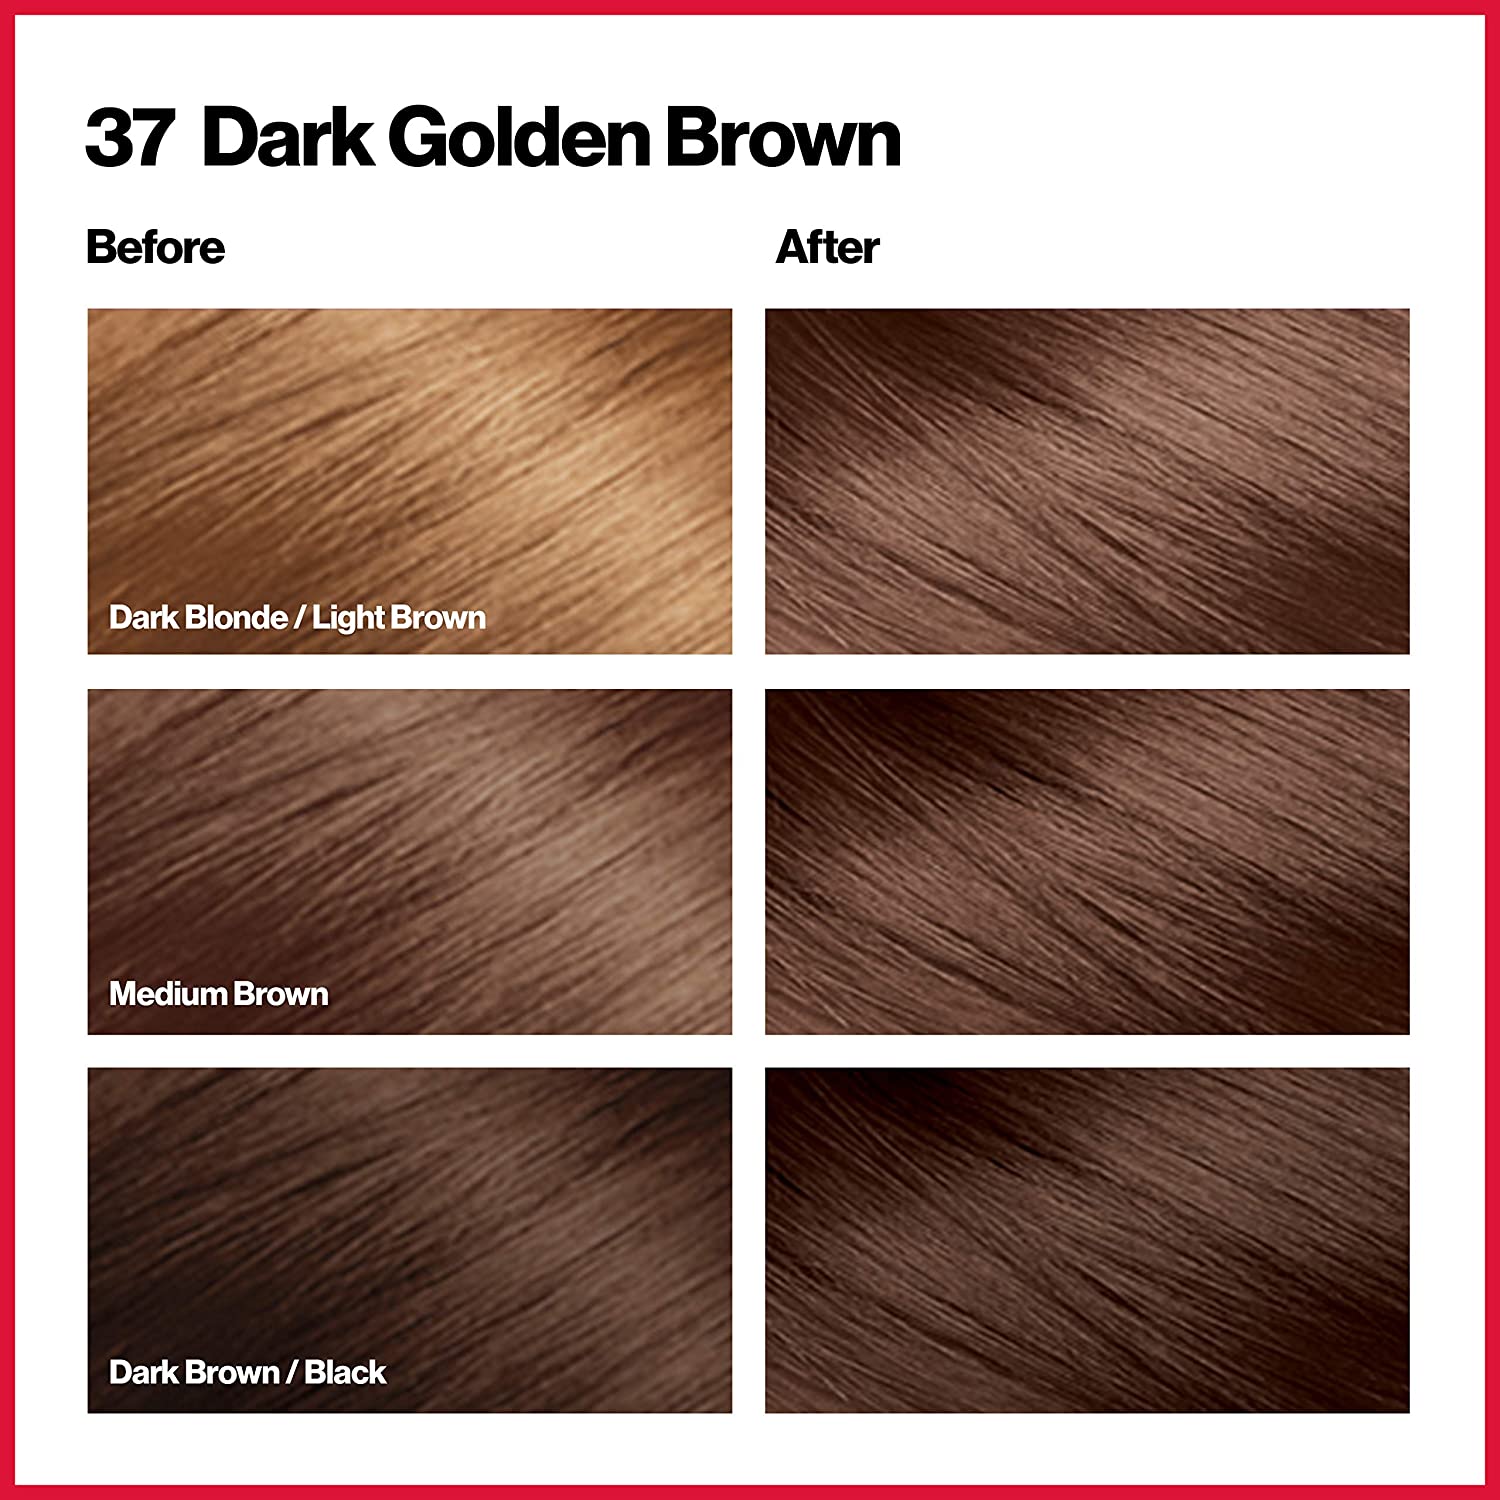 Dark Golden Brown